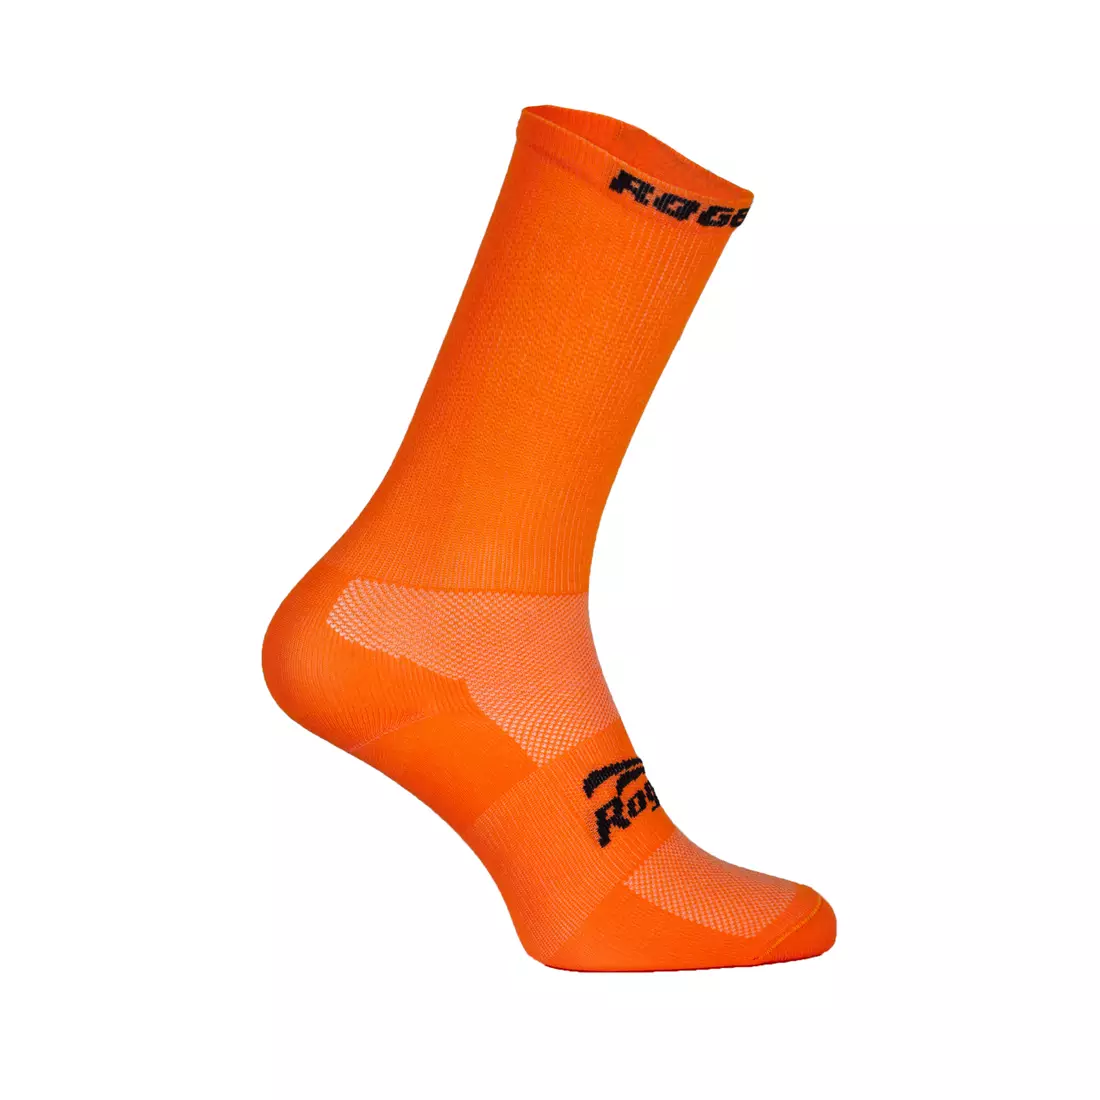 ROGELLI RCS-08 cyklistické ponožky 007,139 oranžová (fluor orange)